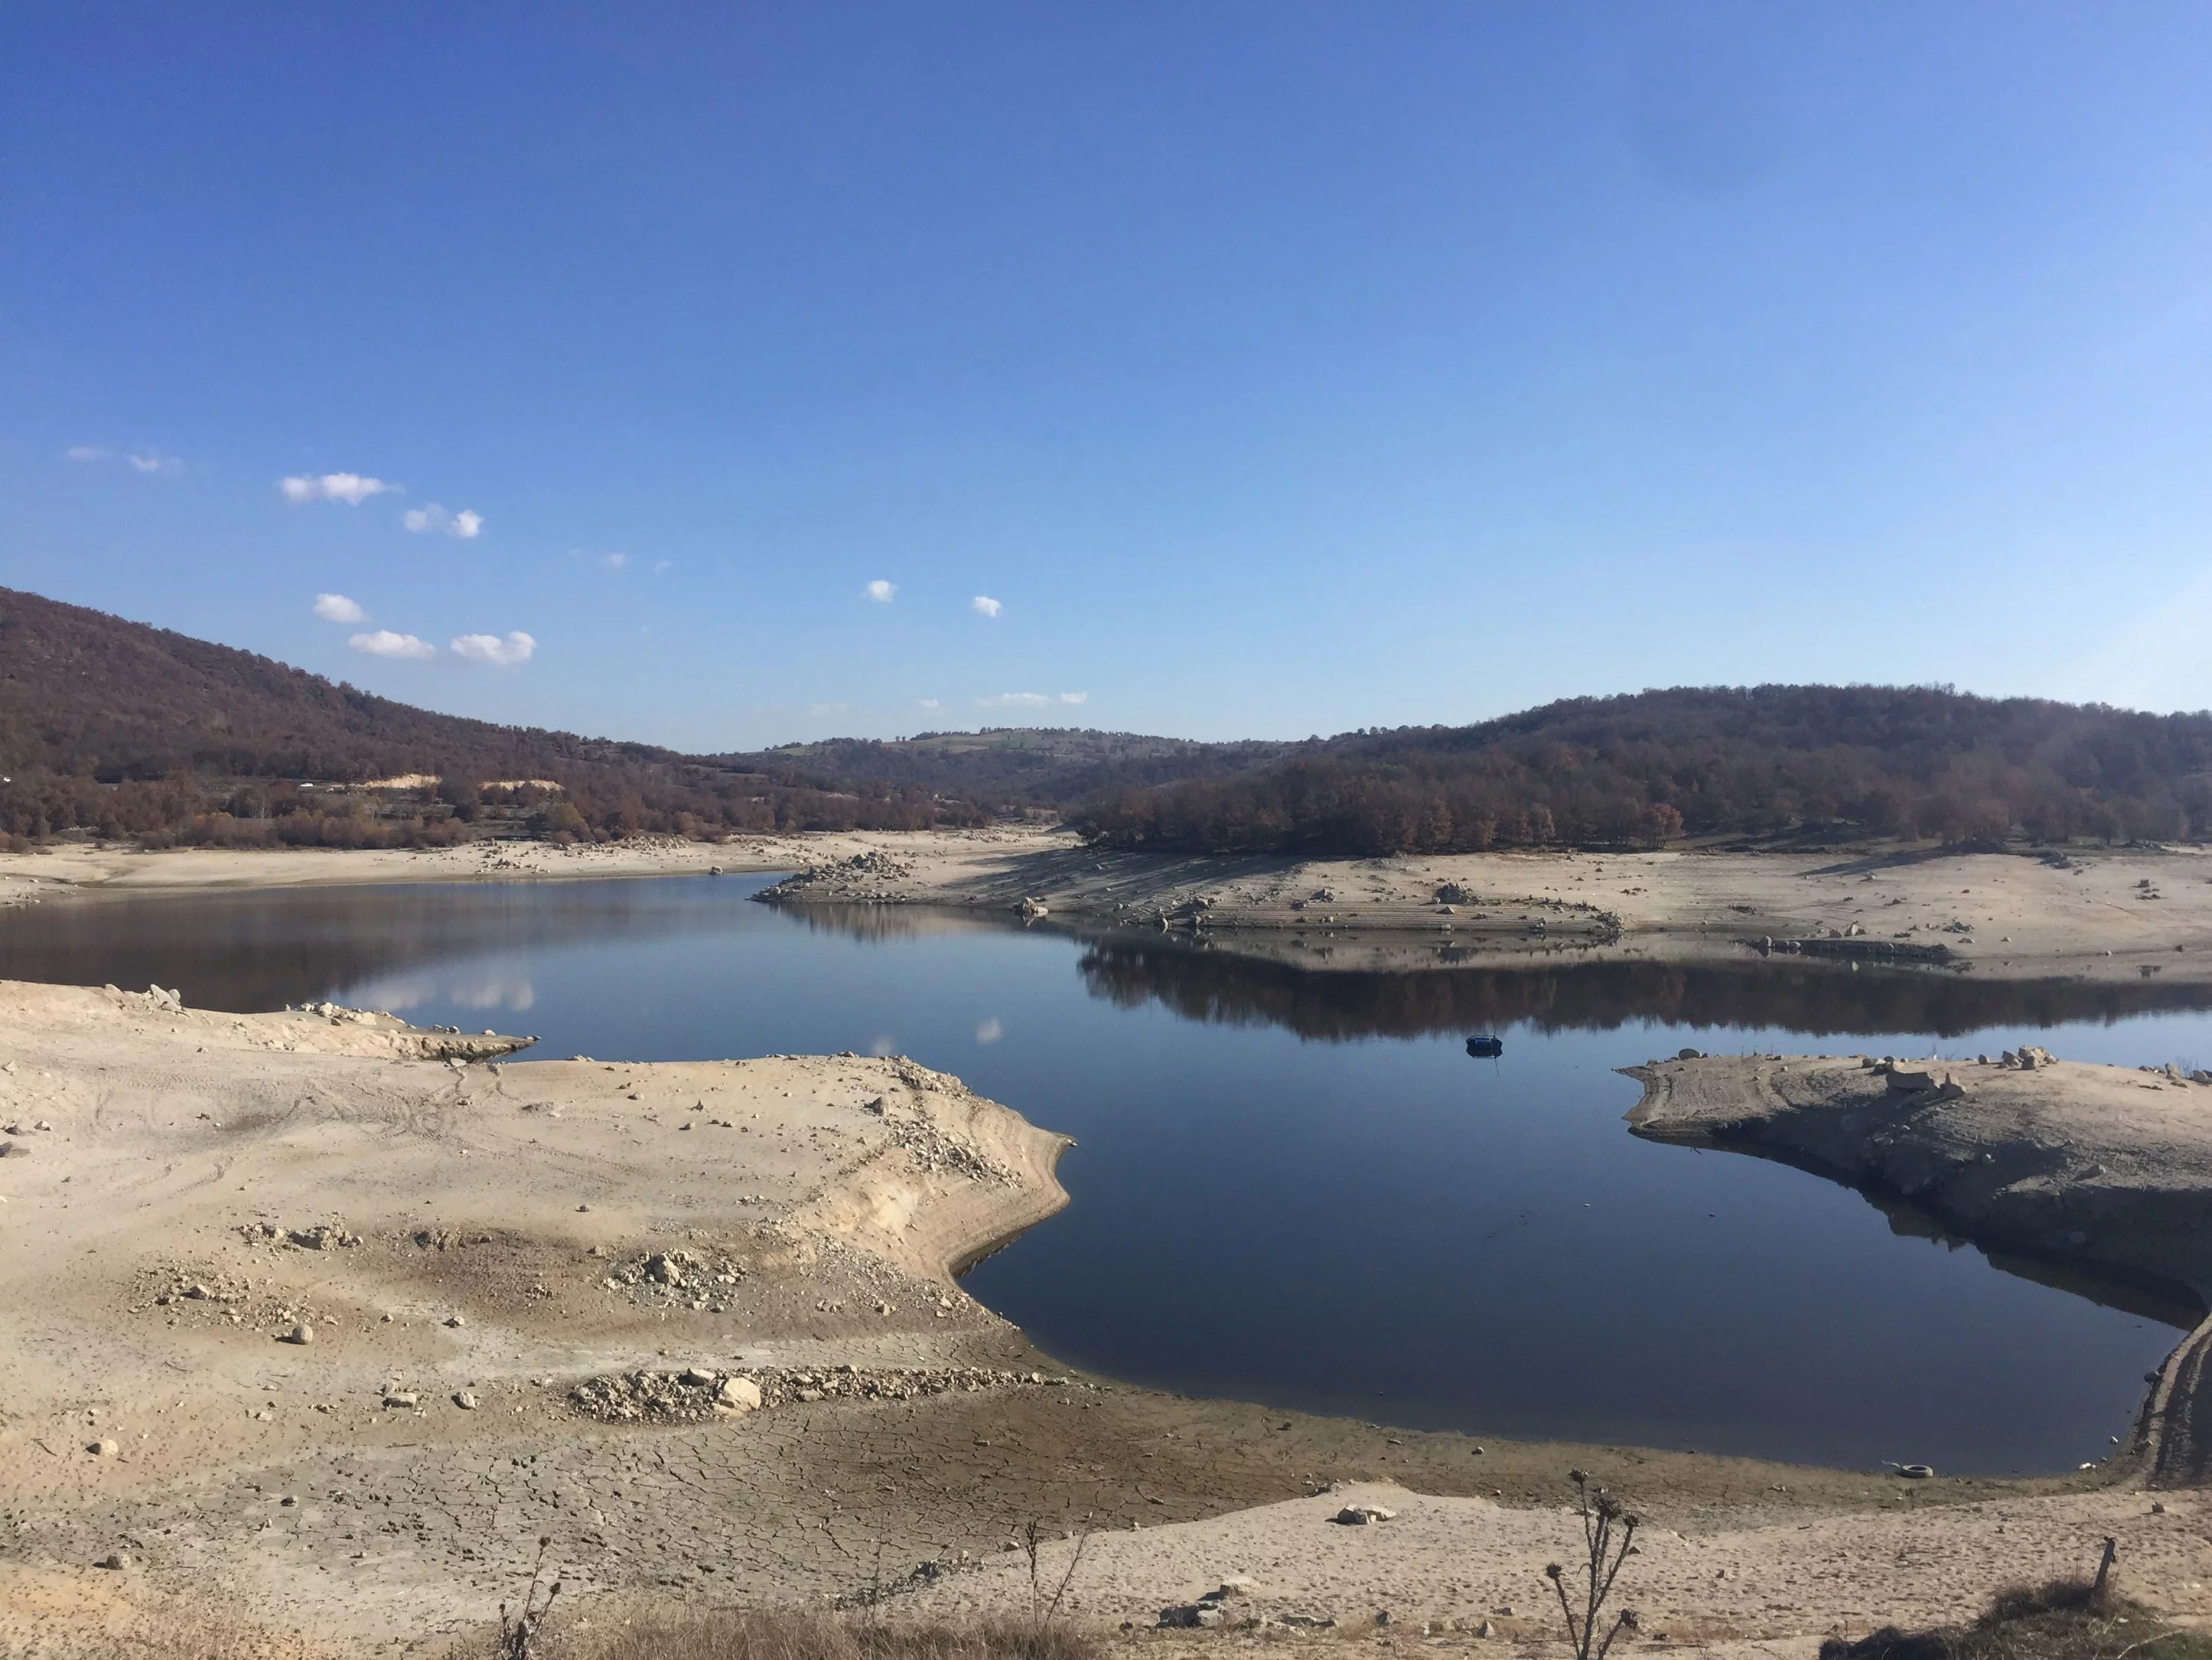 Büyükorhan Cuma Barajı kuruyor